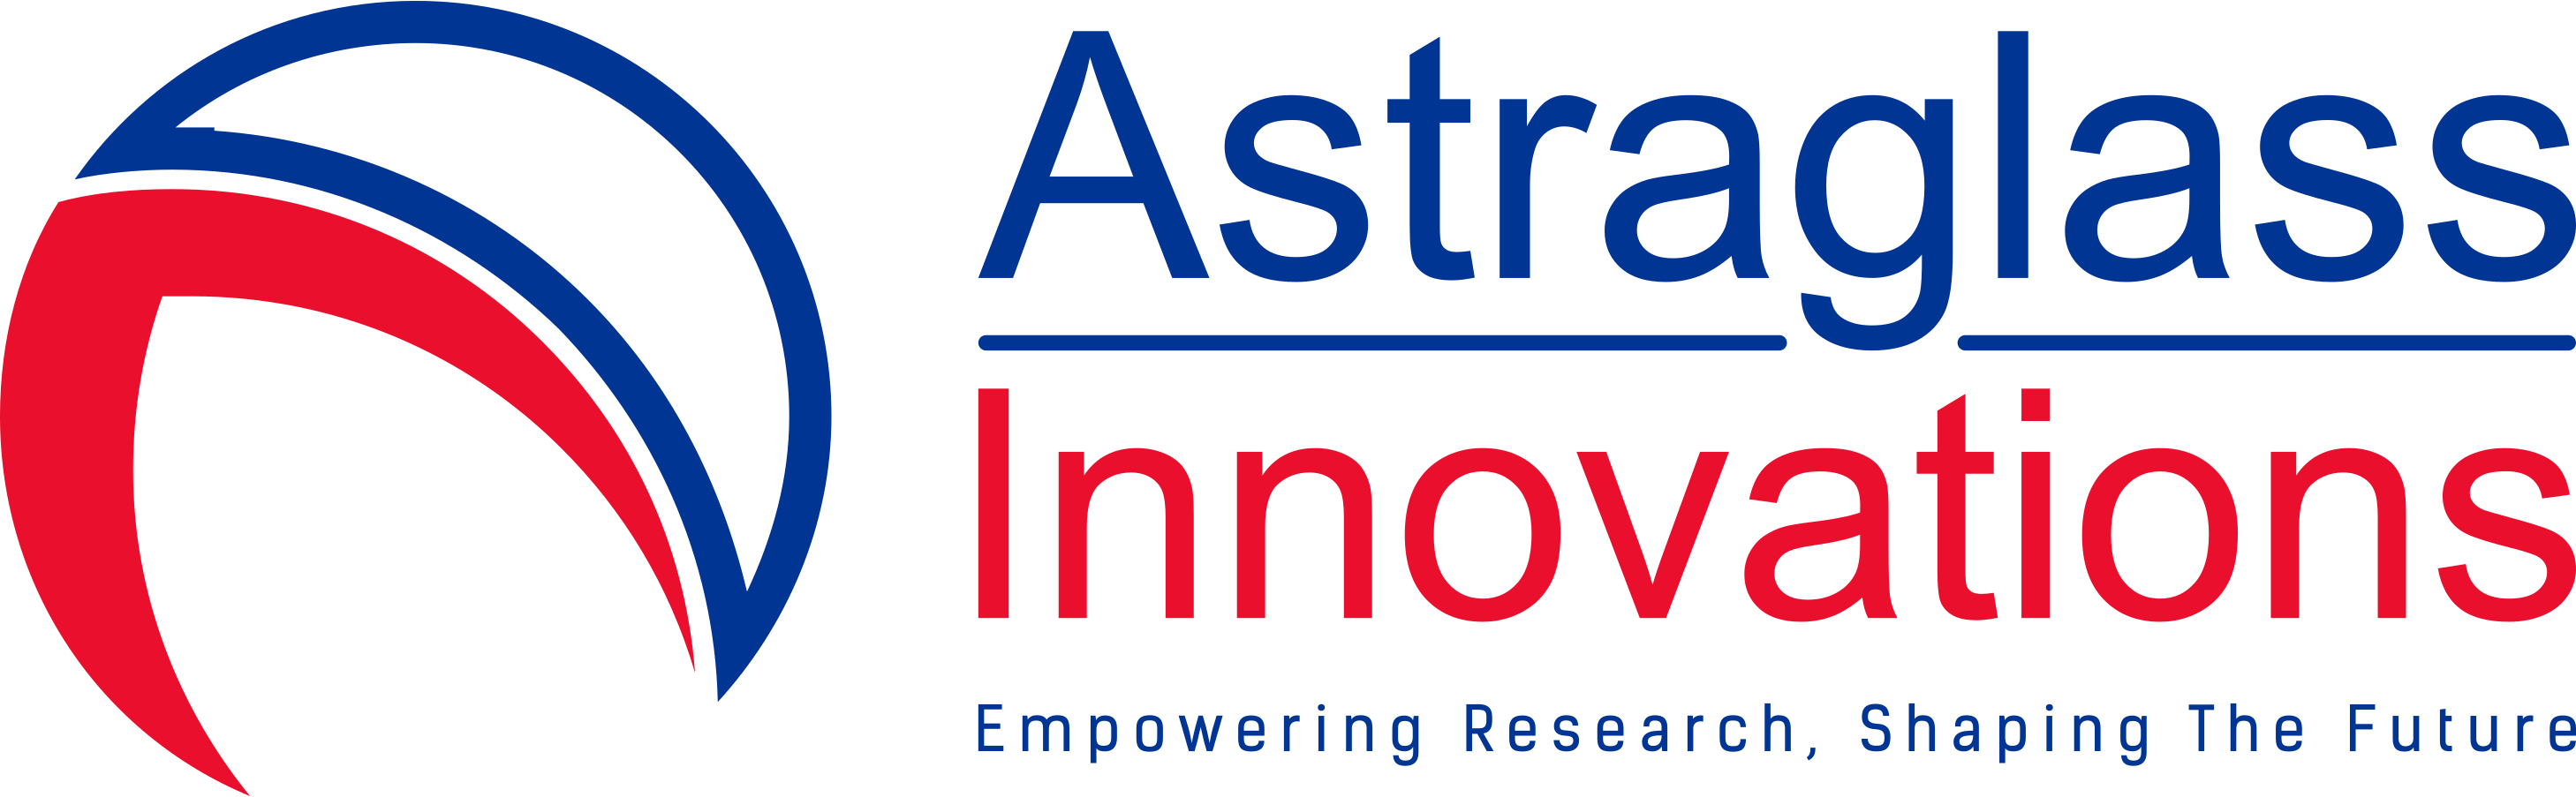 Astraglass Innovations Logo